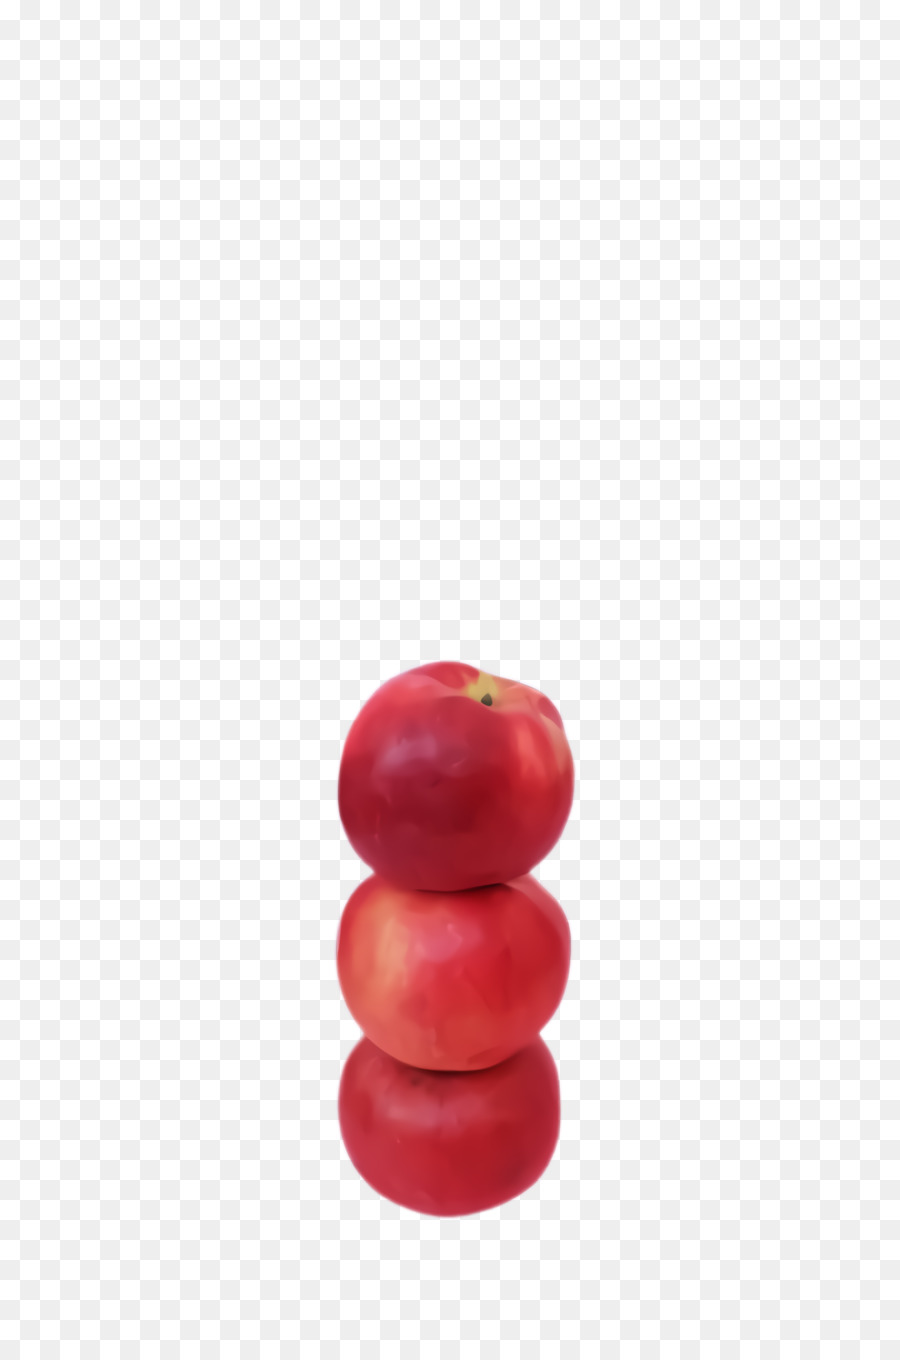 Albero della pianta della ciliegia della frutta rossa - 